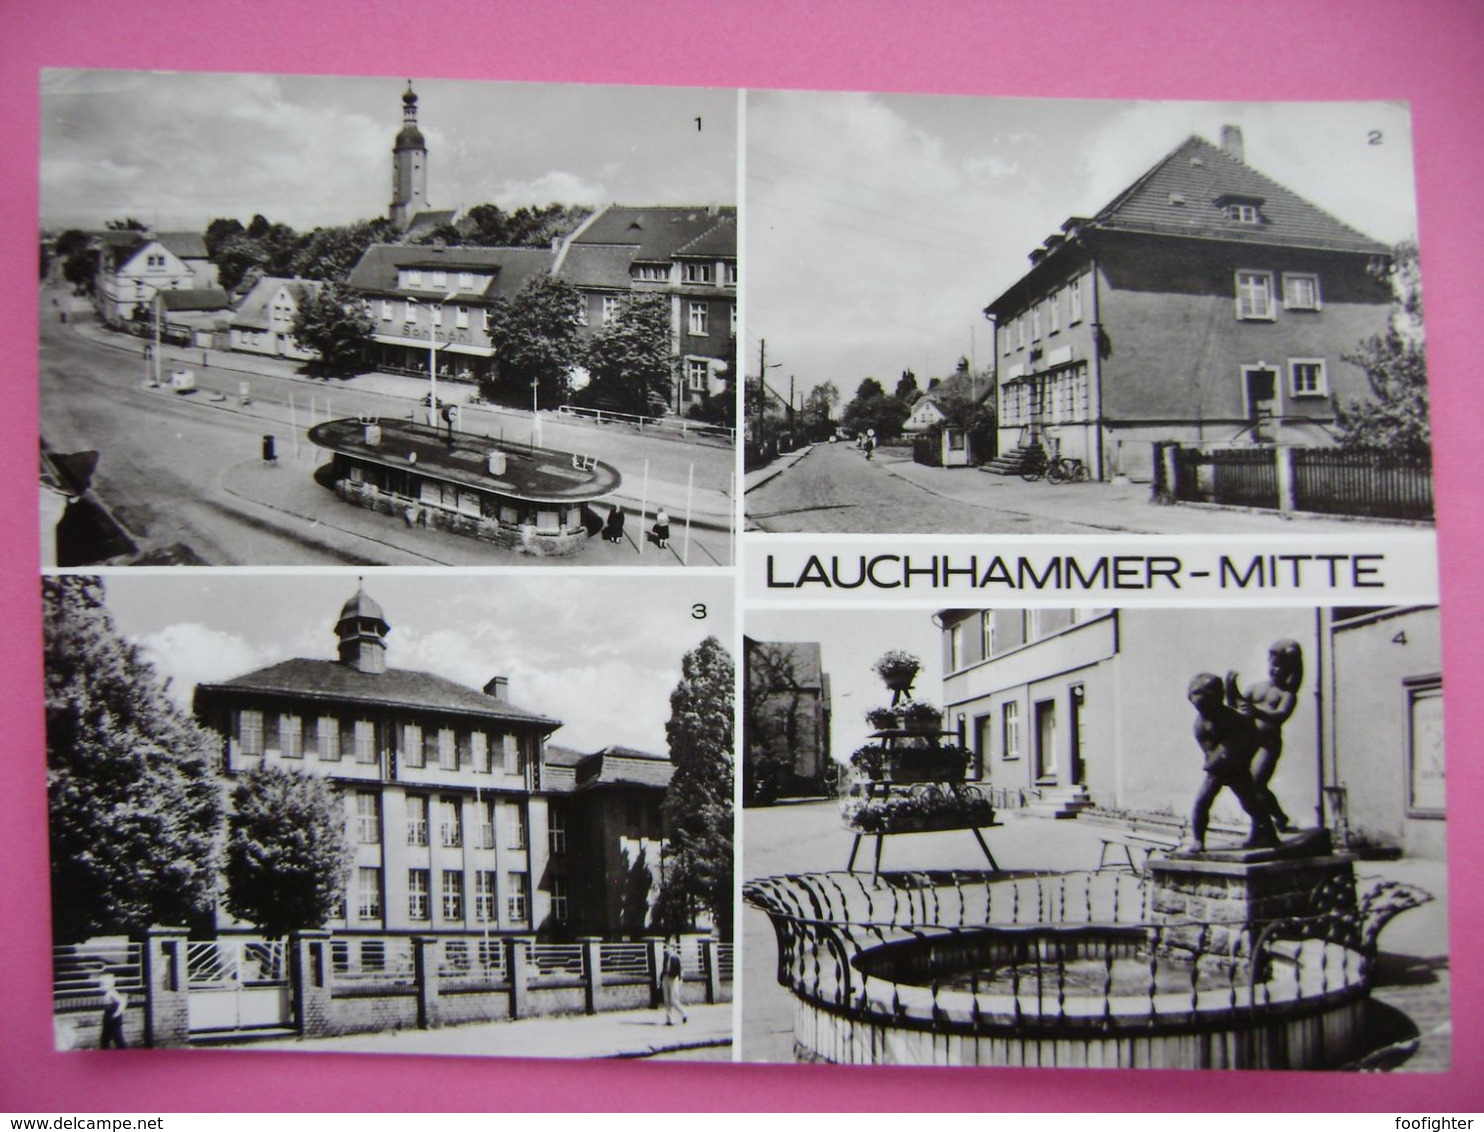 LAUCHHAMMER-Mitte - Wilhelm-Pieck-Platz, Postamt, Erweiterte Oberschule, An Der Kleinleipischer Straße - Posted 1976 - Lauchhammer